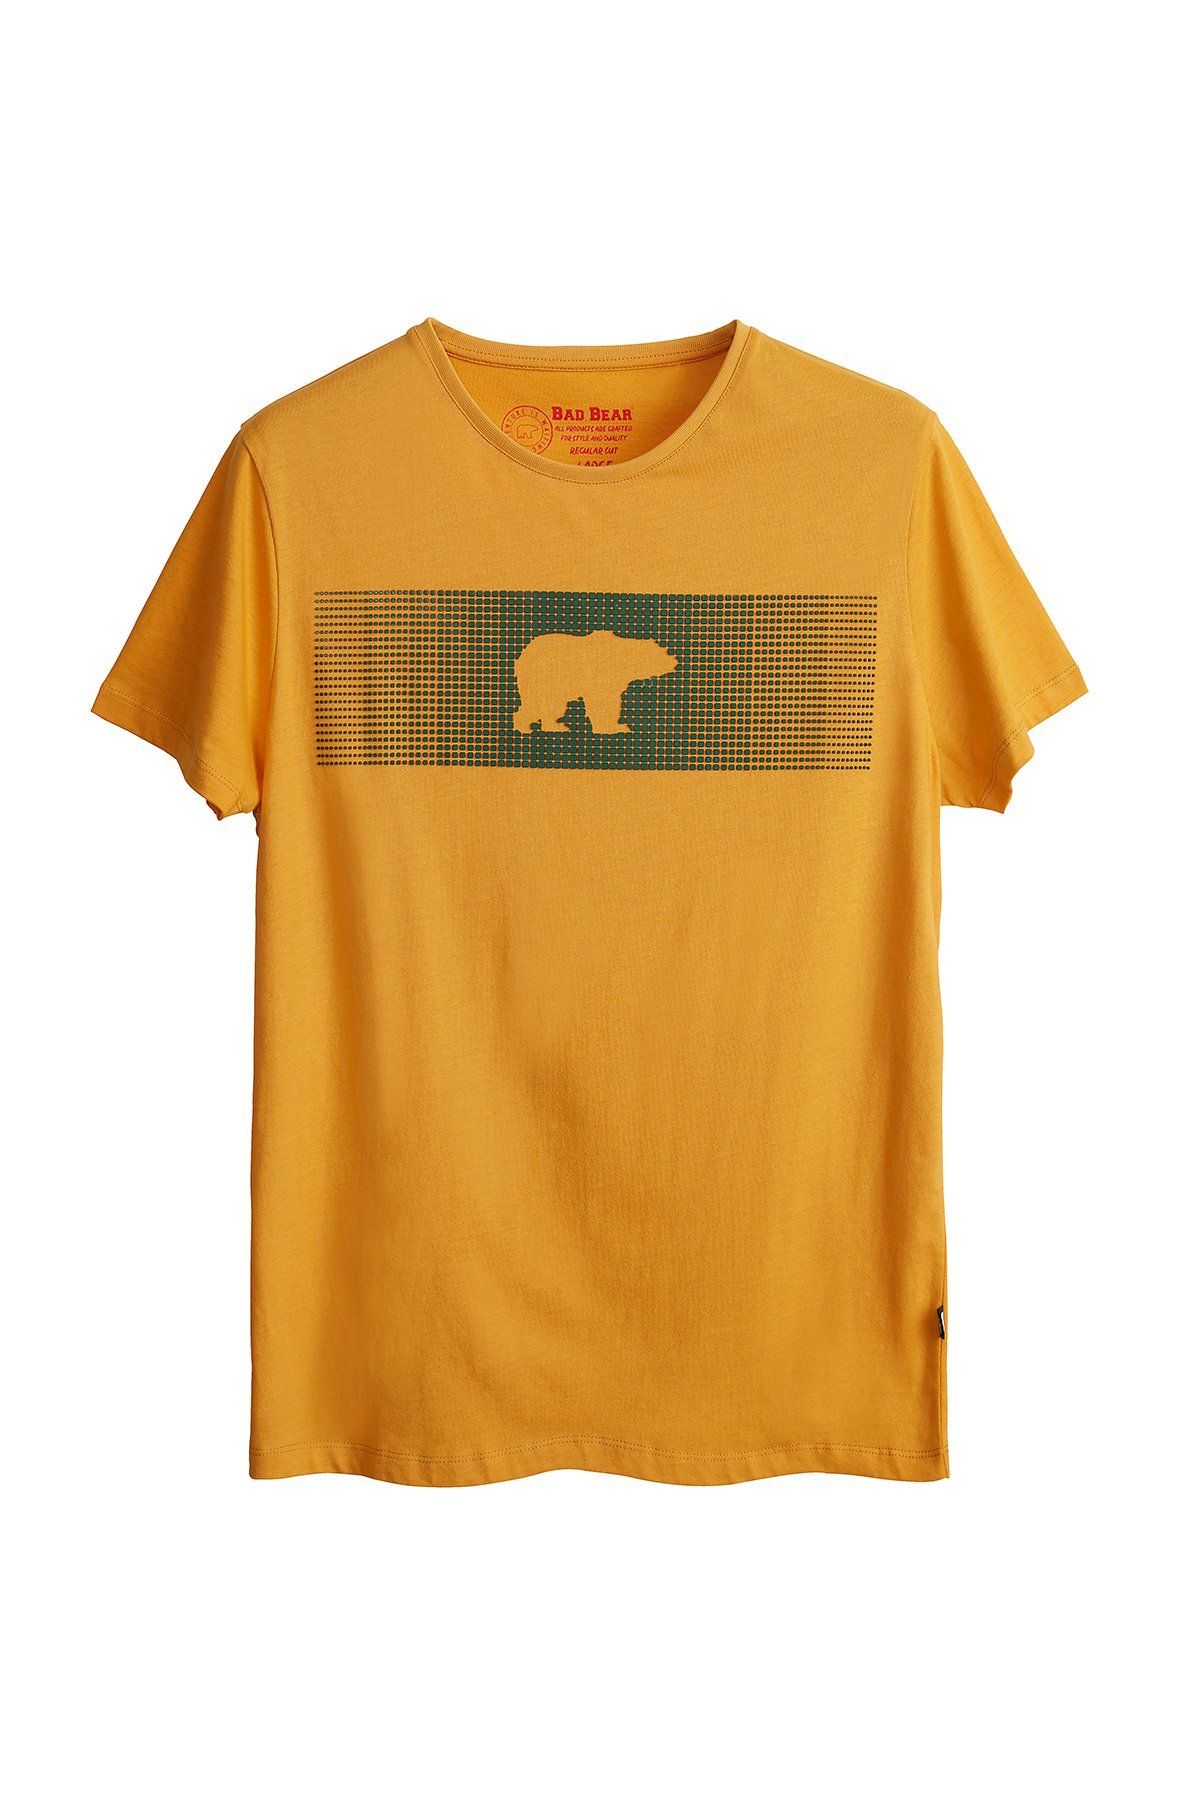 Bad Bear Fancy T-shirt Hardal 3d Baskılı Erkek Tişört